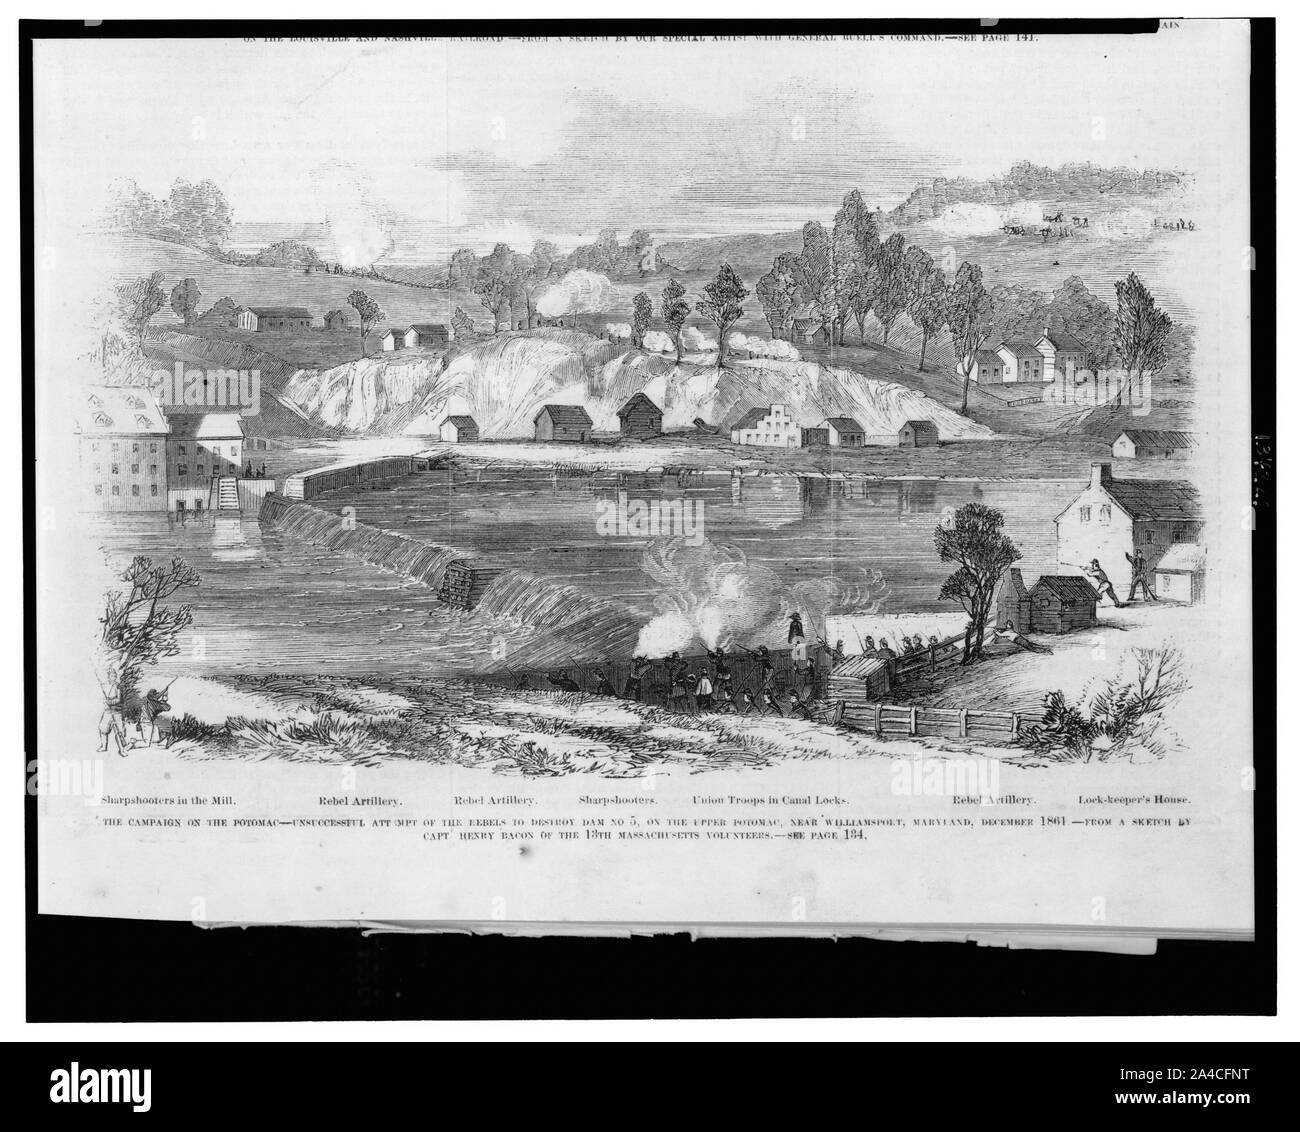 Die Kampagne auf dem Potomac - erfolglosen Versuch der Rebellen damm Nr. zu zerstören 5 auf der oberen Potomac, Maryland, in der Nähe von Williamsport, Dezember 1861/aus einer Skizze vom Kapitän Henry Speck für die 13 Massachusetts Freiwillige. Stockfoto